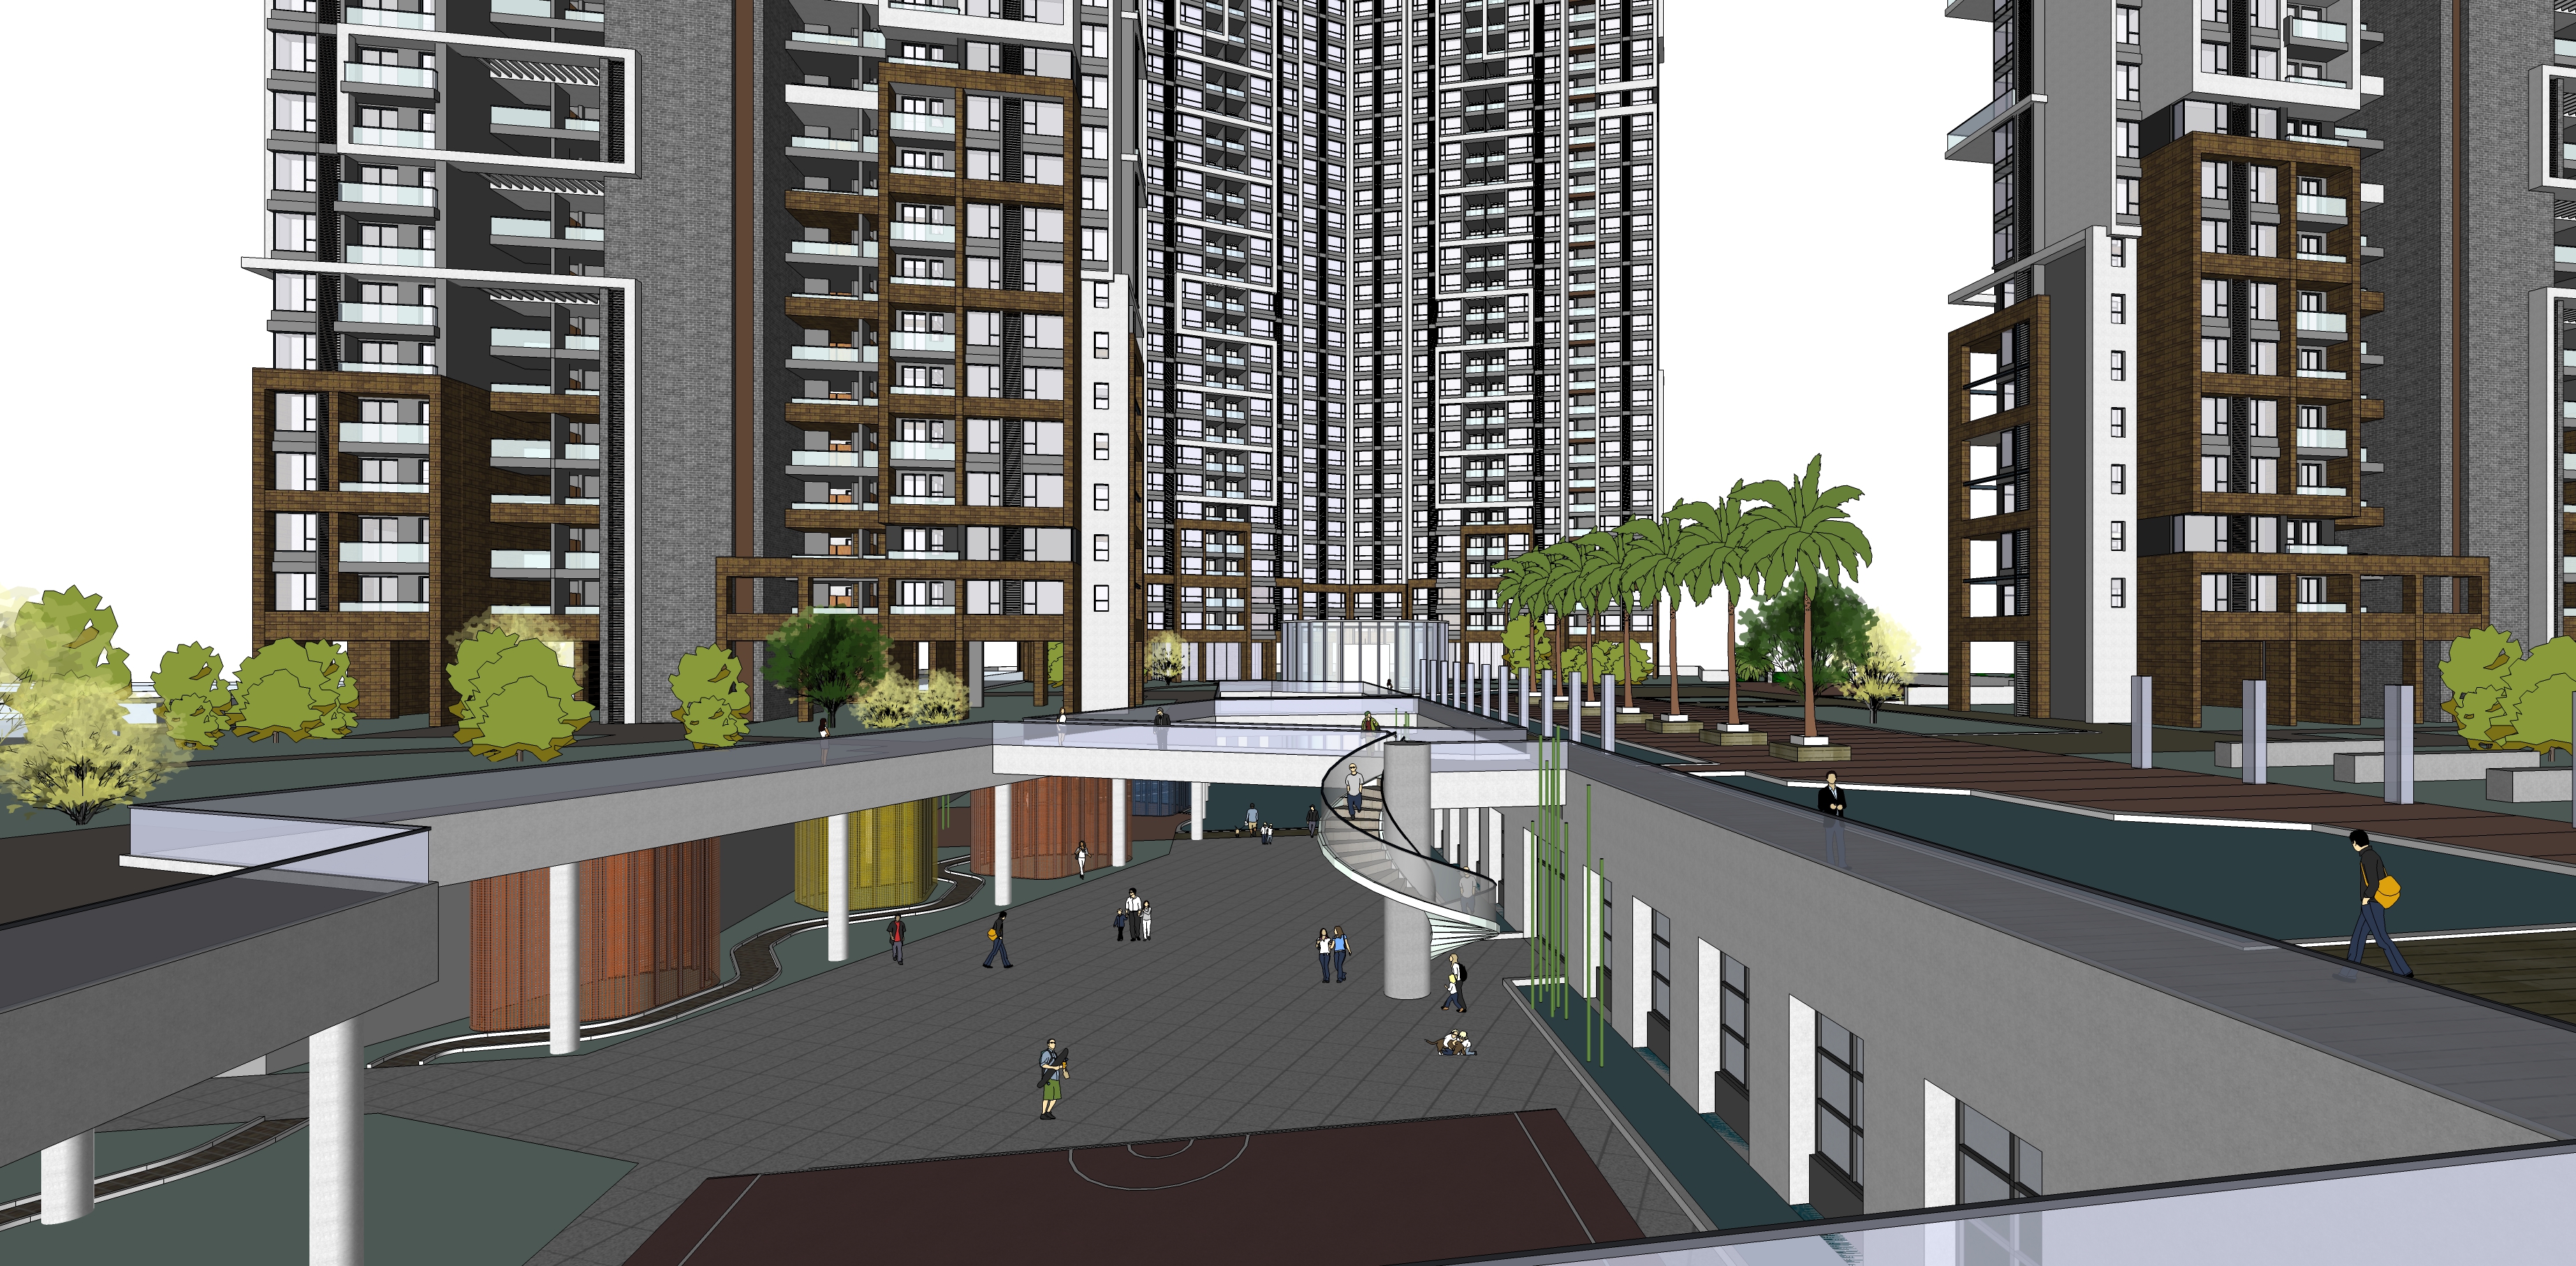 新河三角洲现代风格住宅小区规划方案sketchup模